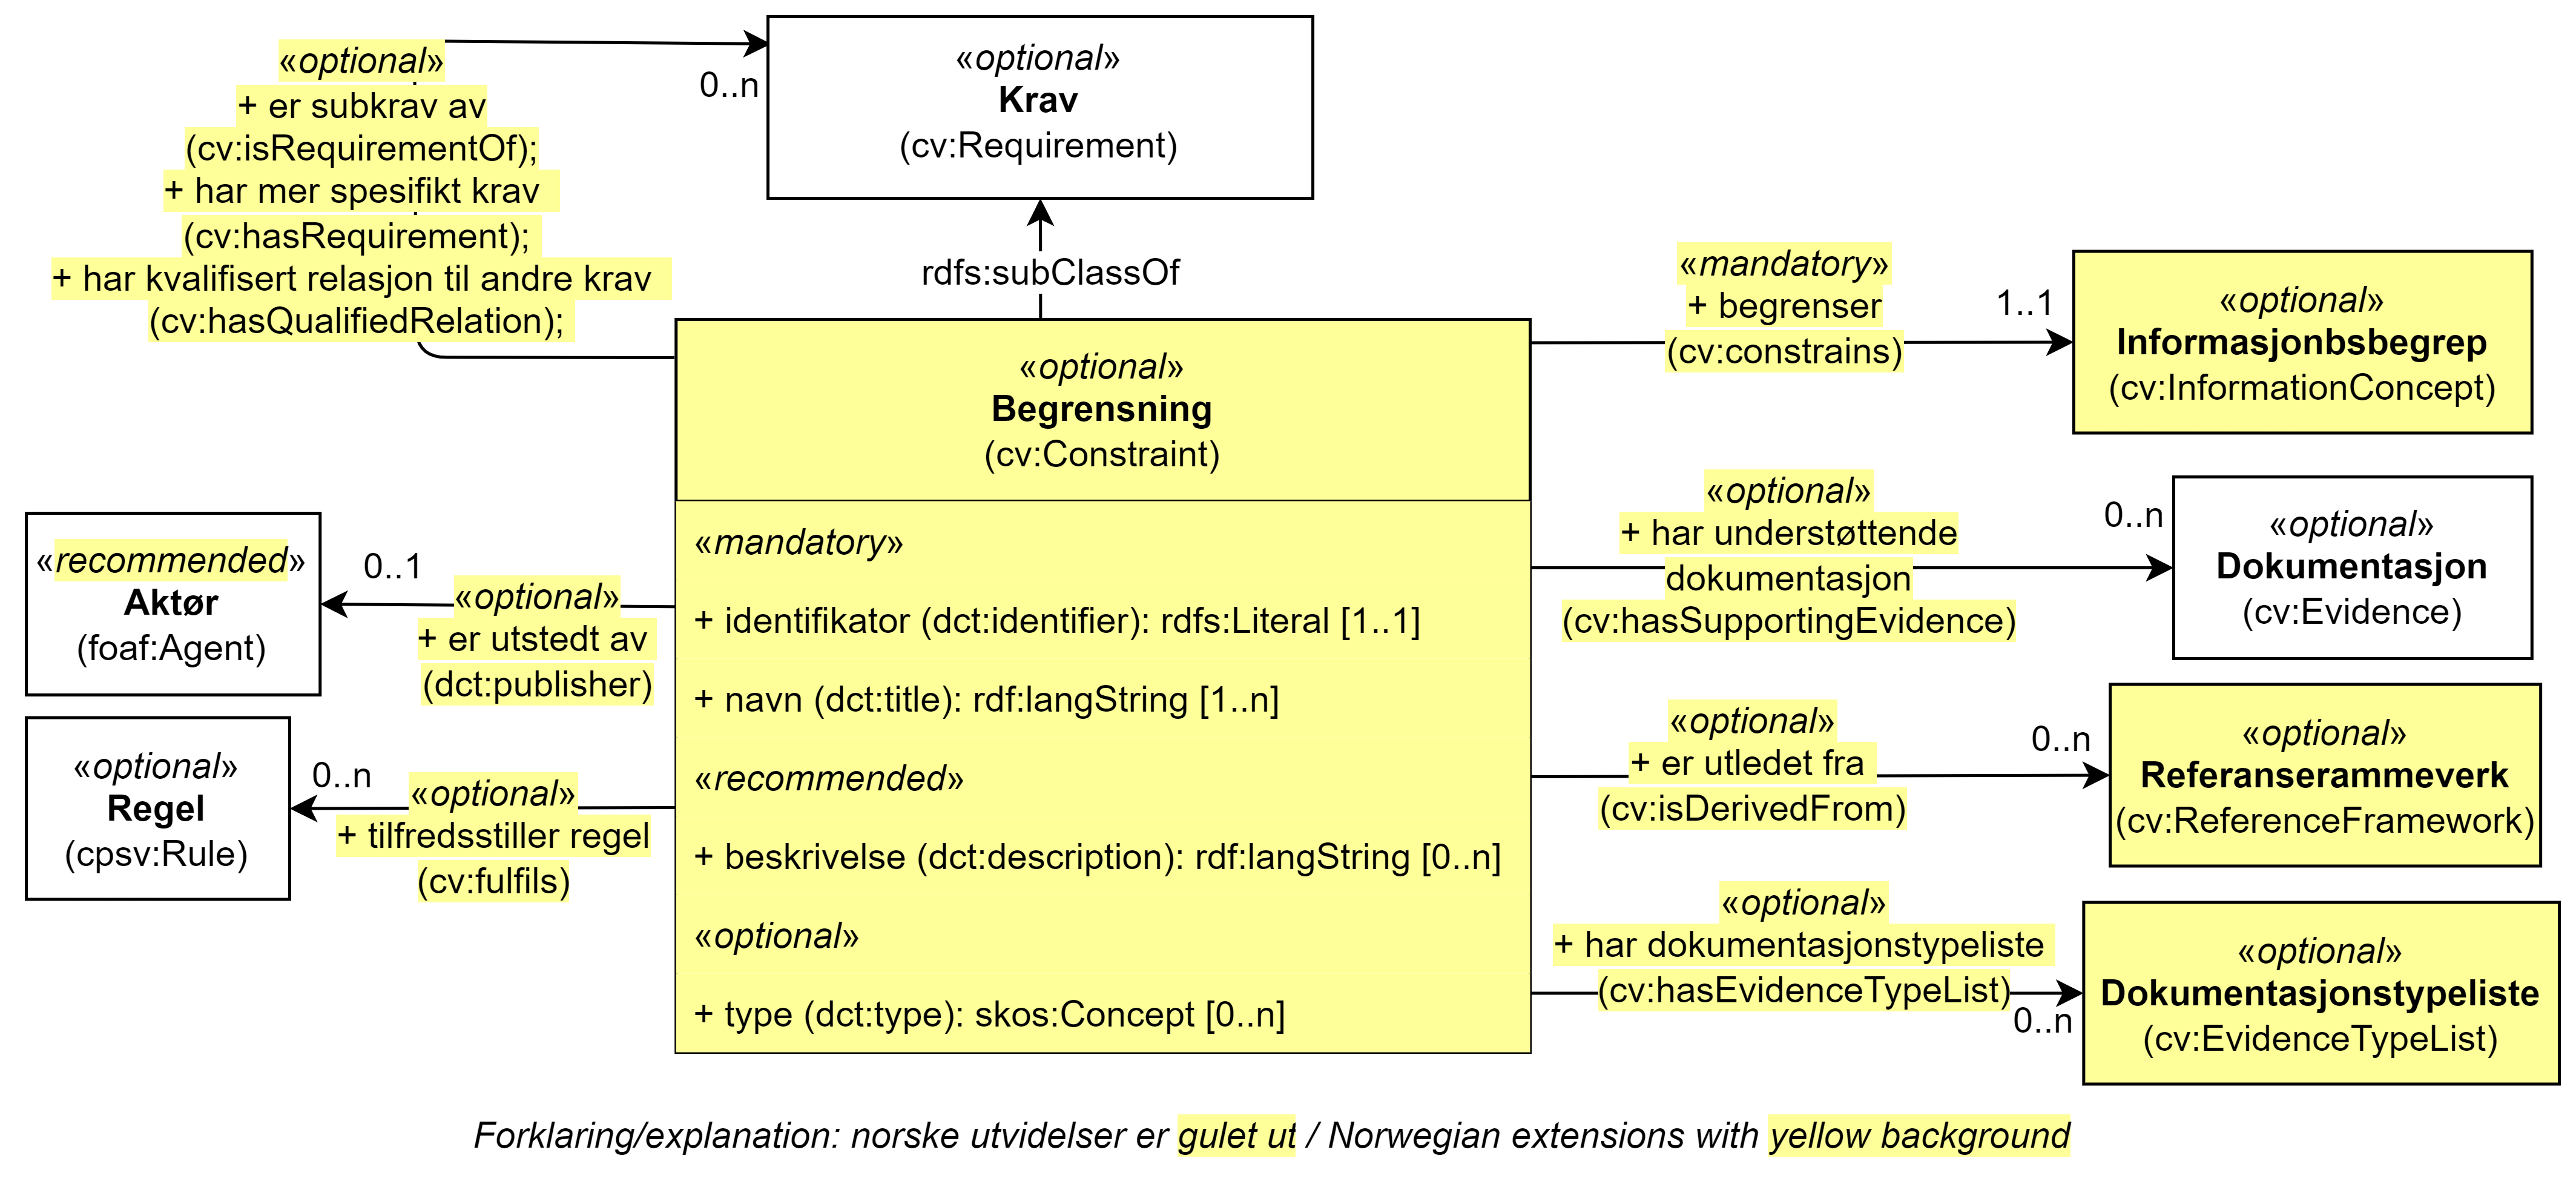 UML-diagram med klassen Begrensning, dens egenskaper og dens relasjoner til sju andre klasser. Norske utvidelser er gulet ut. Innholdet i diagrammet er forklart i teksten.